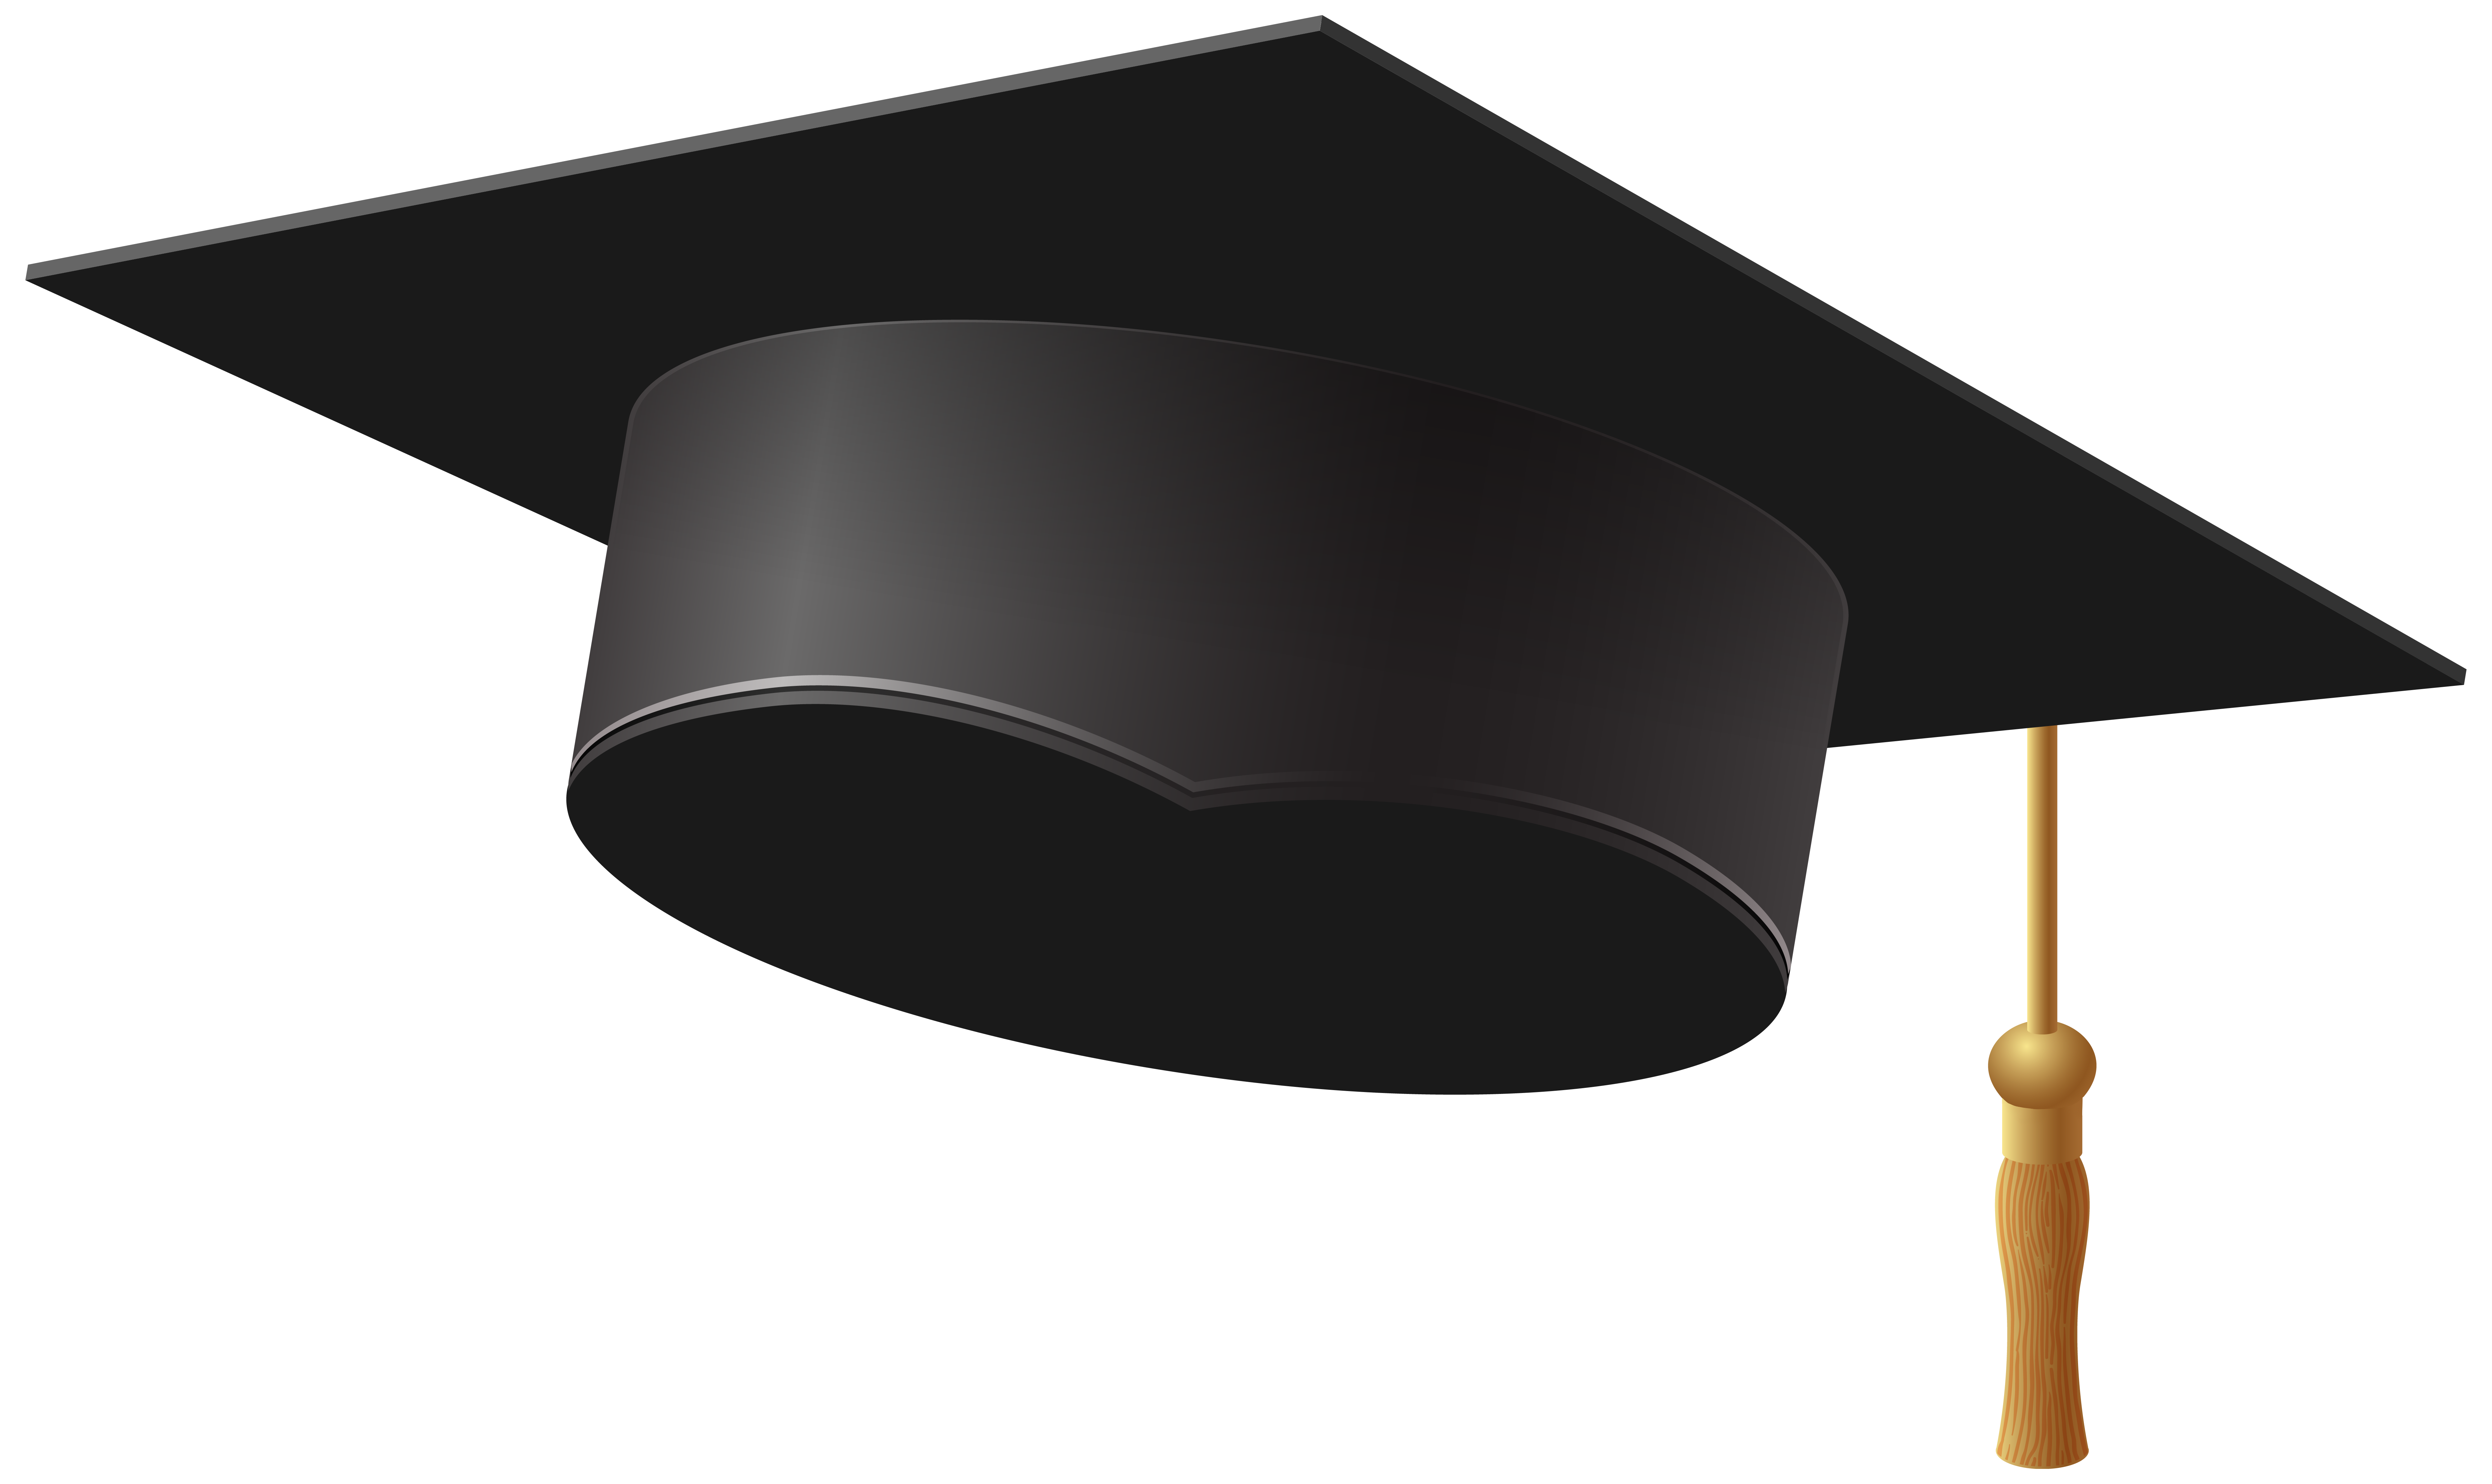 Free Graduation Cap Transparent, Download Free Graduation Cap